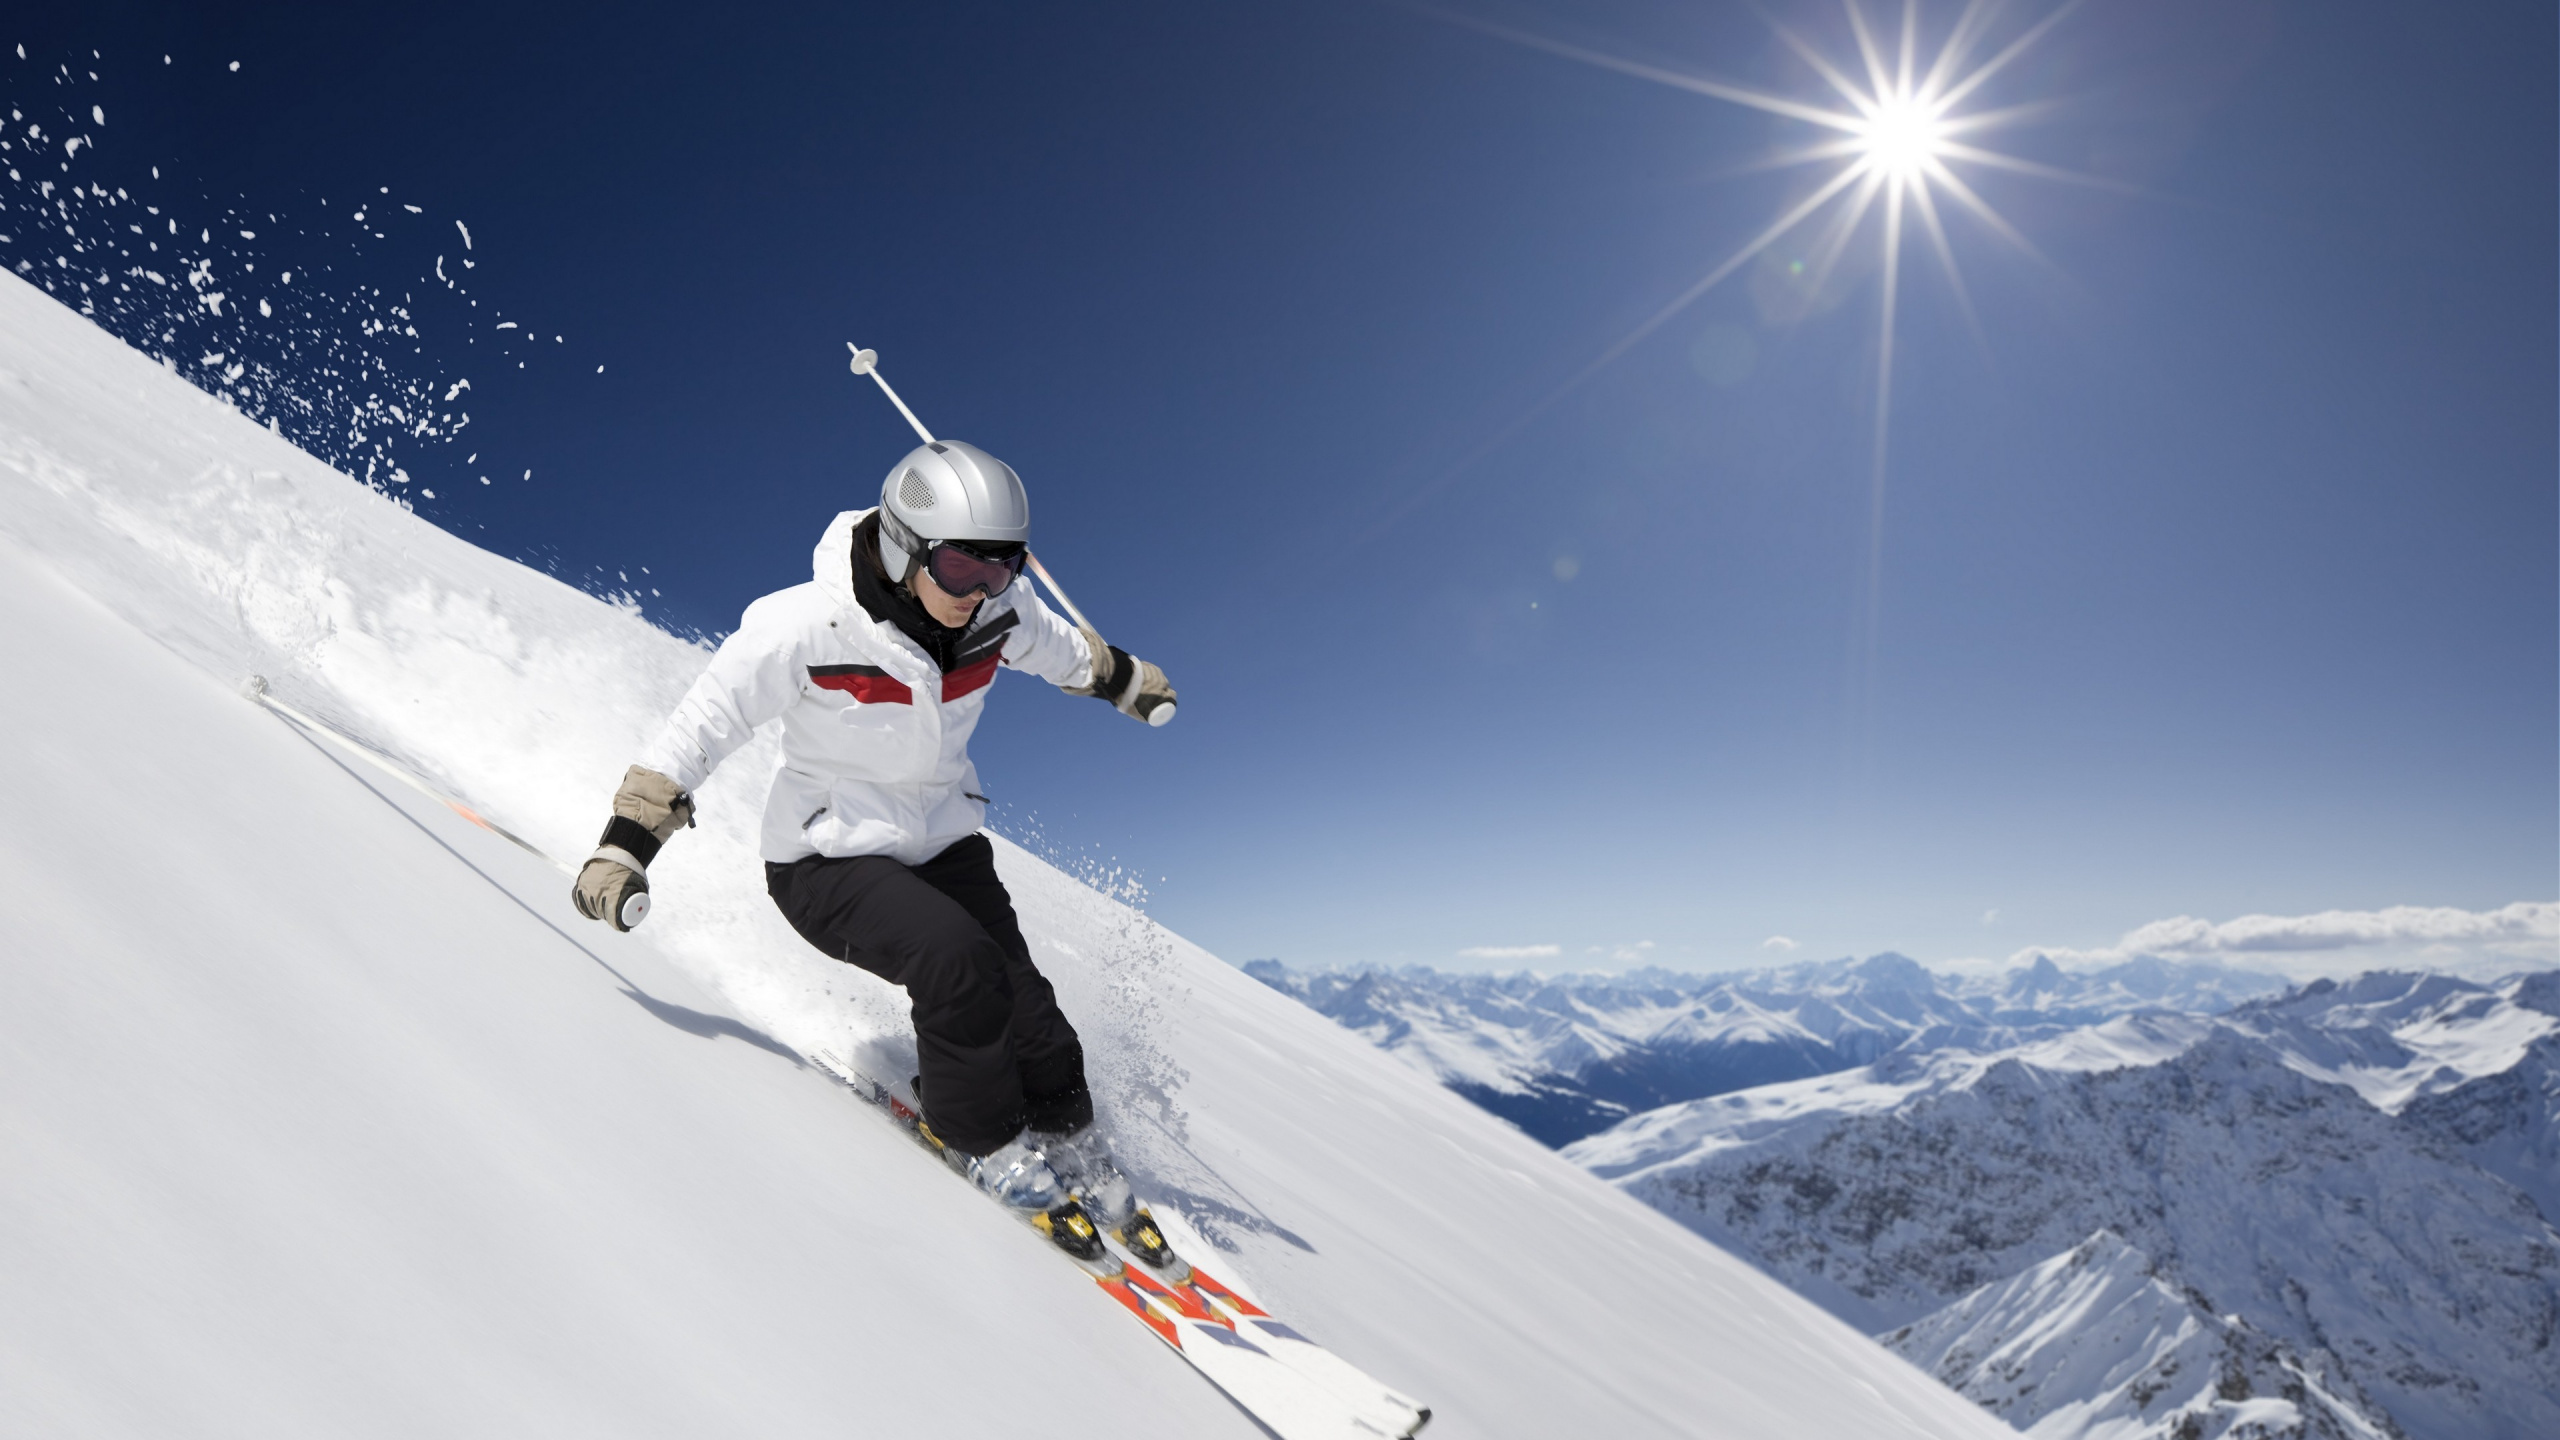 极限运动, 滑雪, 高山滑雪, 滑雪的交叉, Boardsport 壁纸 2560x1440 允许